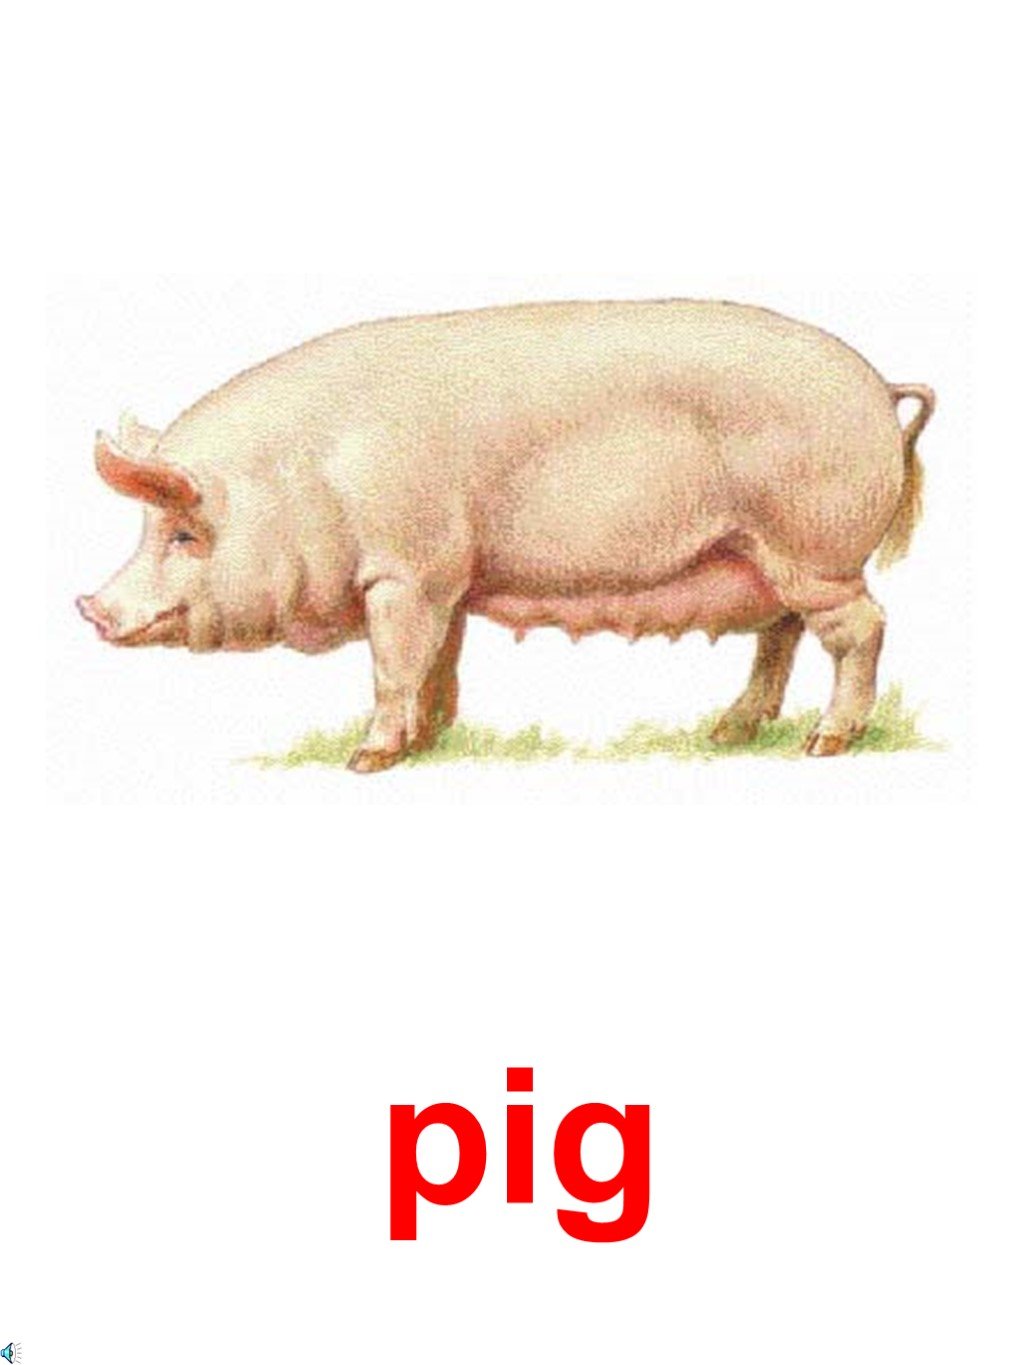 Русский язык свиней. Латвийская белая порода свиней. Порода свиней Йоркшир. Литовская белая свинья. Латвийская порода свиней.